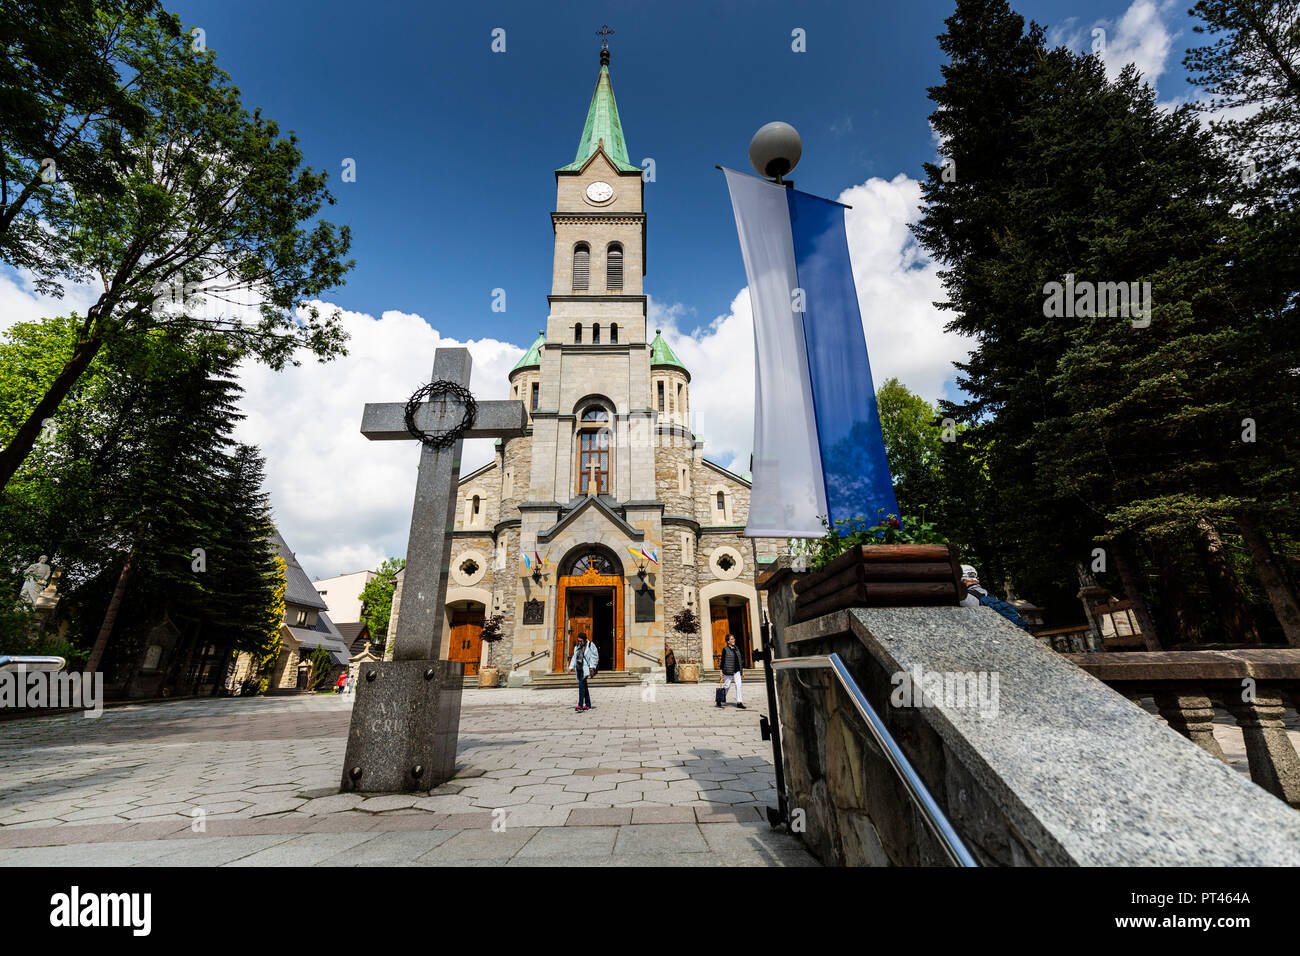 Europe, Poland, Lesser Poland, Zakopane - Krupowki - Church of the Holy Family Stock Photo